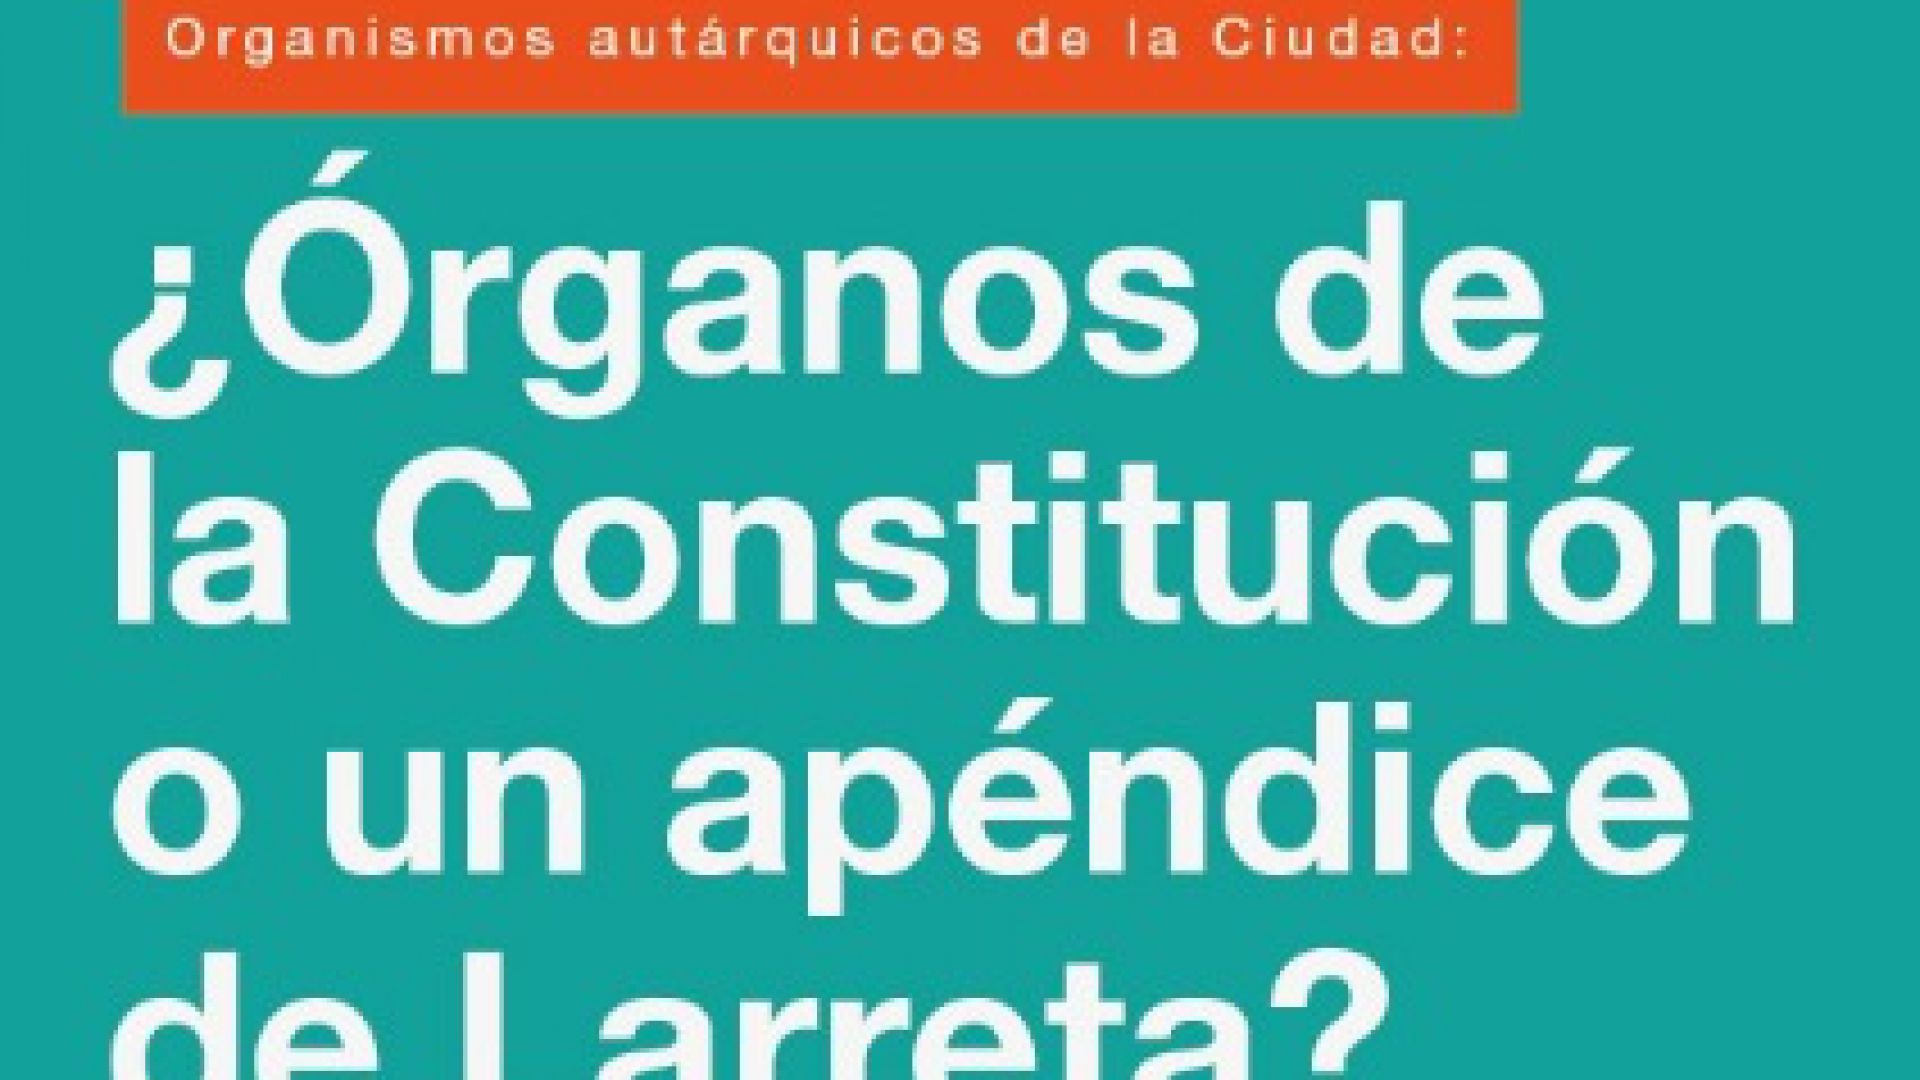 Organismos autárquicos de la Ciudad: ¿Órganos de la Constitución o un apéndice de Larreta?